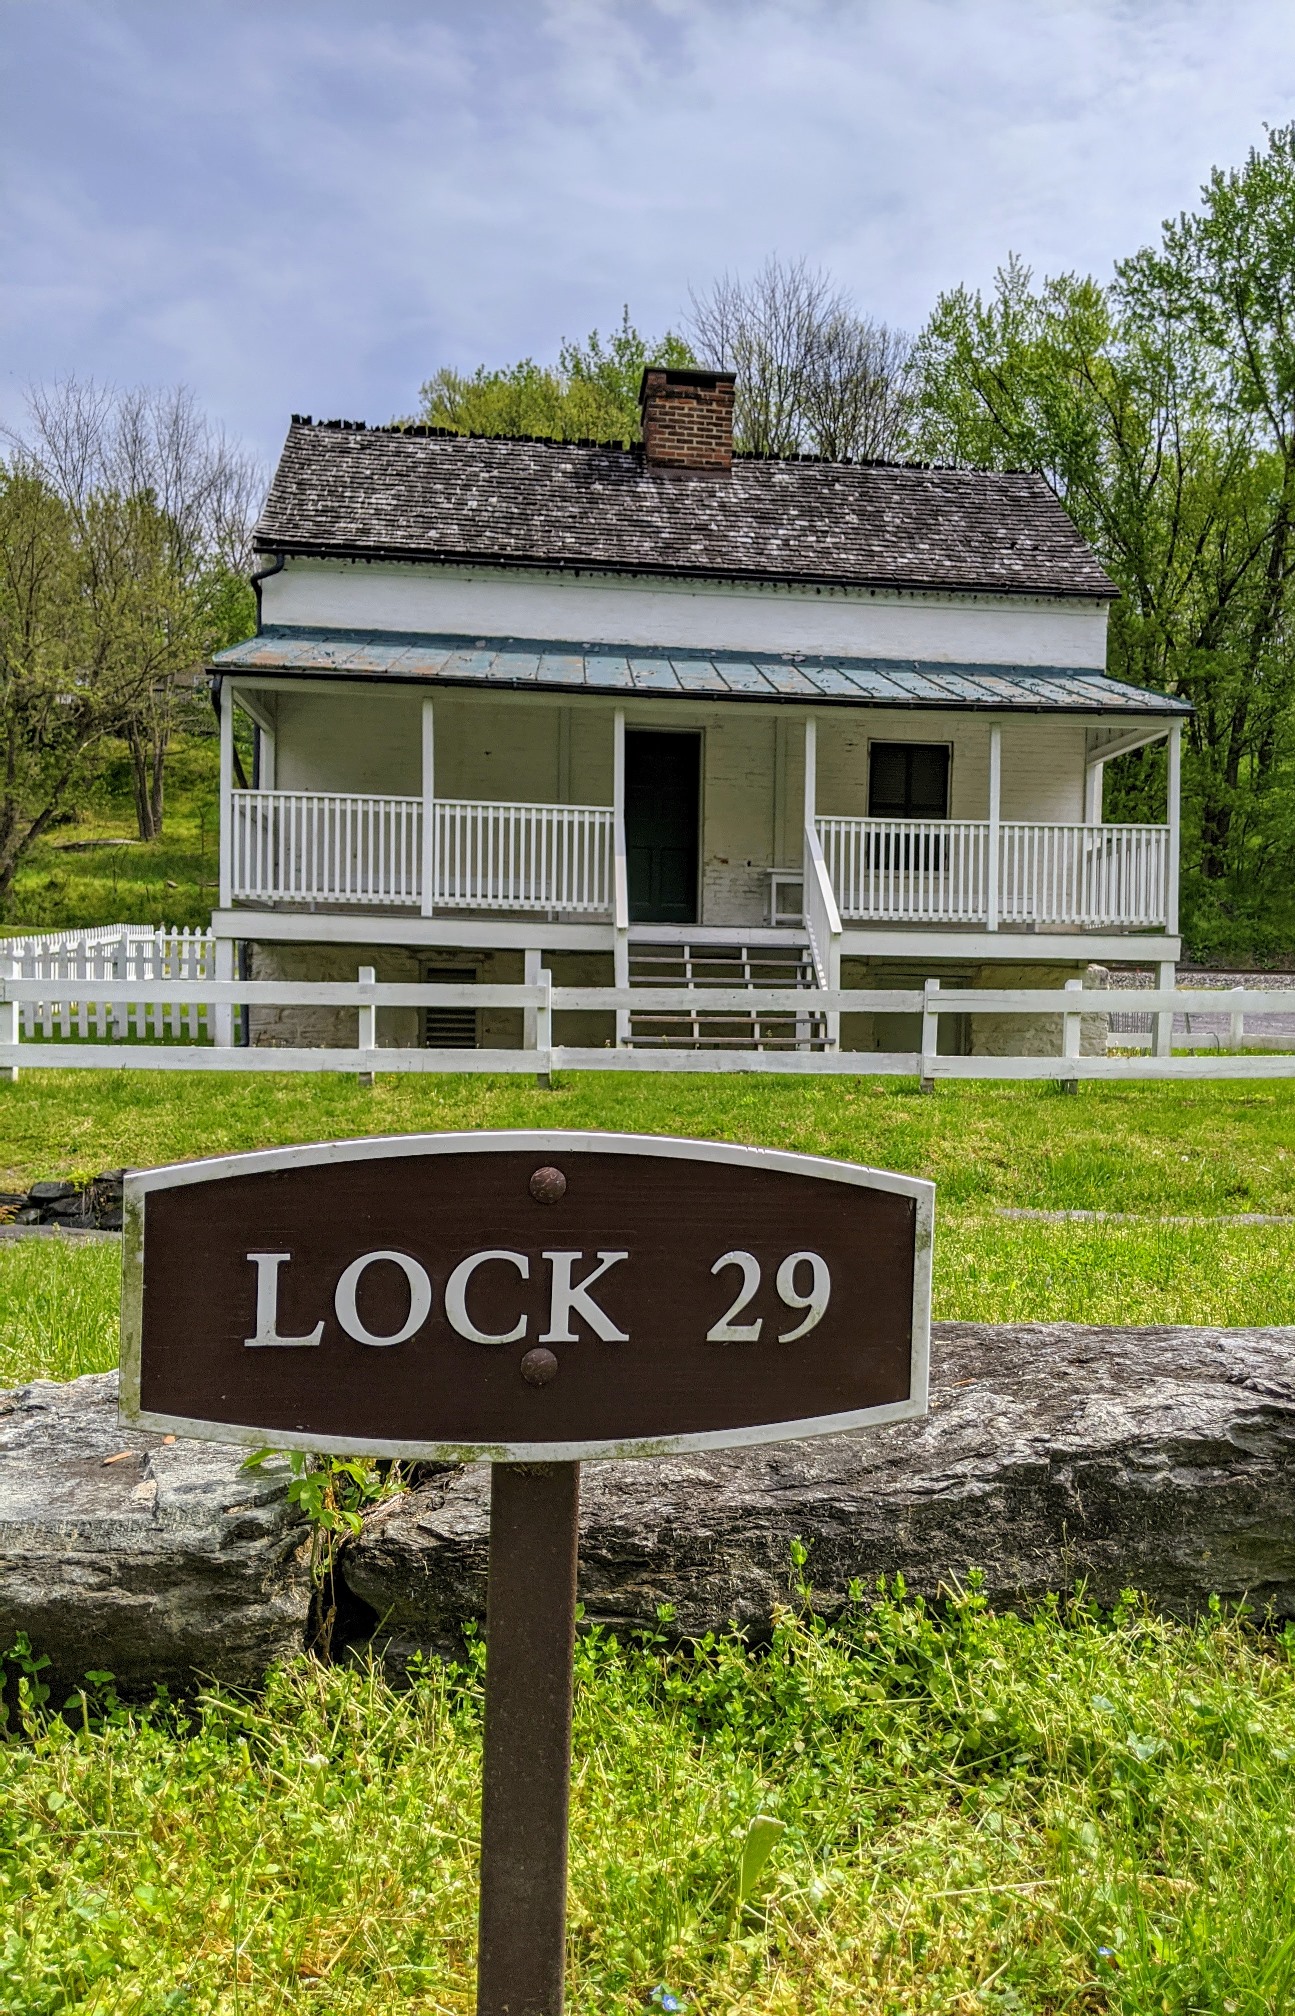 Lockhouse 29